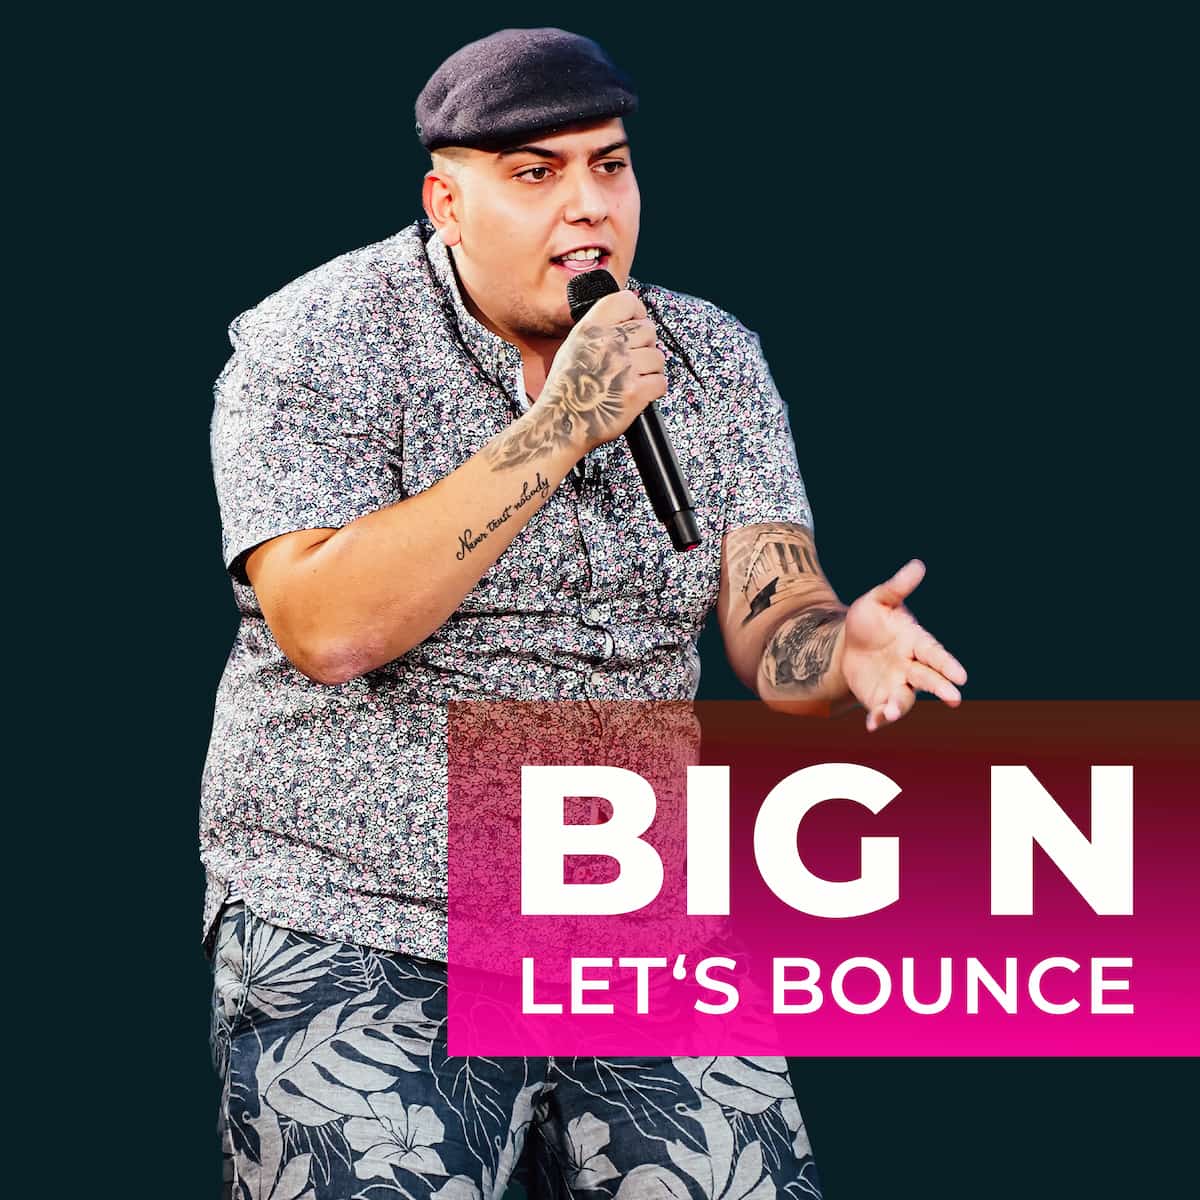 BIG N hat “Let's Bounce” aus DSDS 2023 als Single veröffentlicht - hier im Bild das Single-Cover mit Nikolaos Simediriadis alias BIG N bei seinem DSDS-Auftritt 